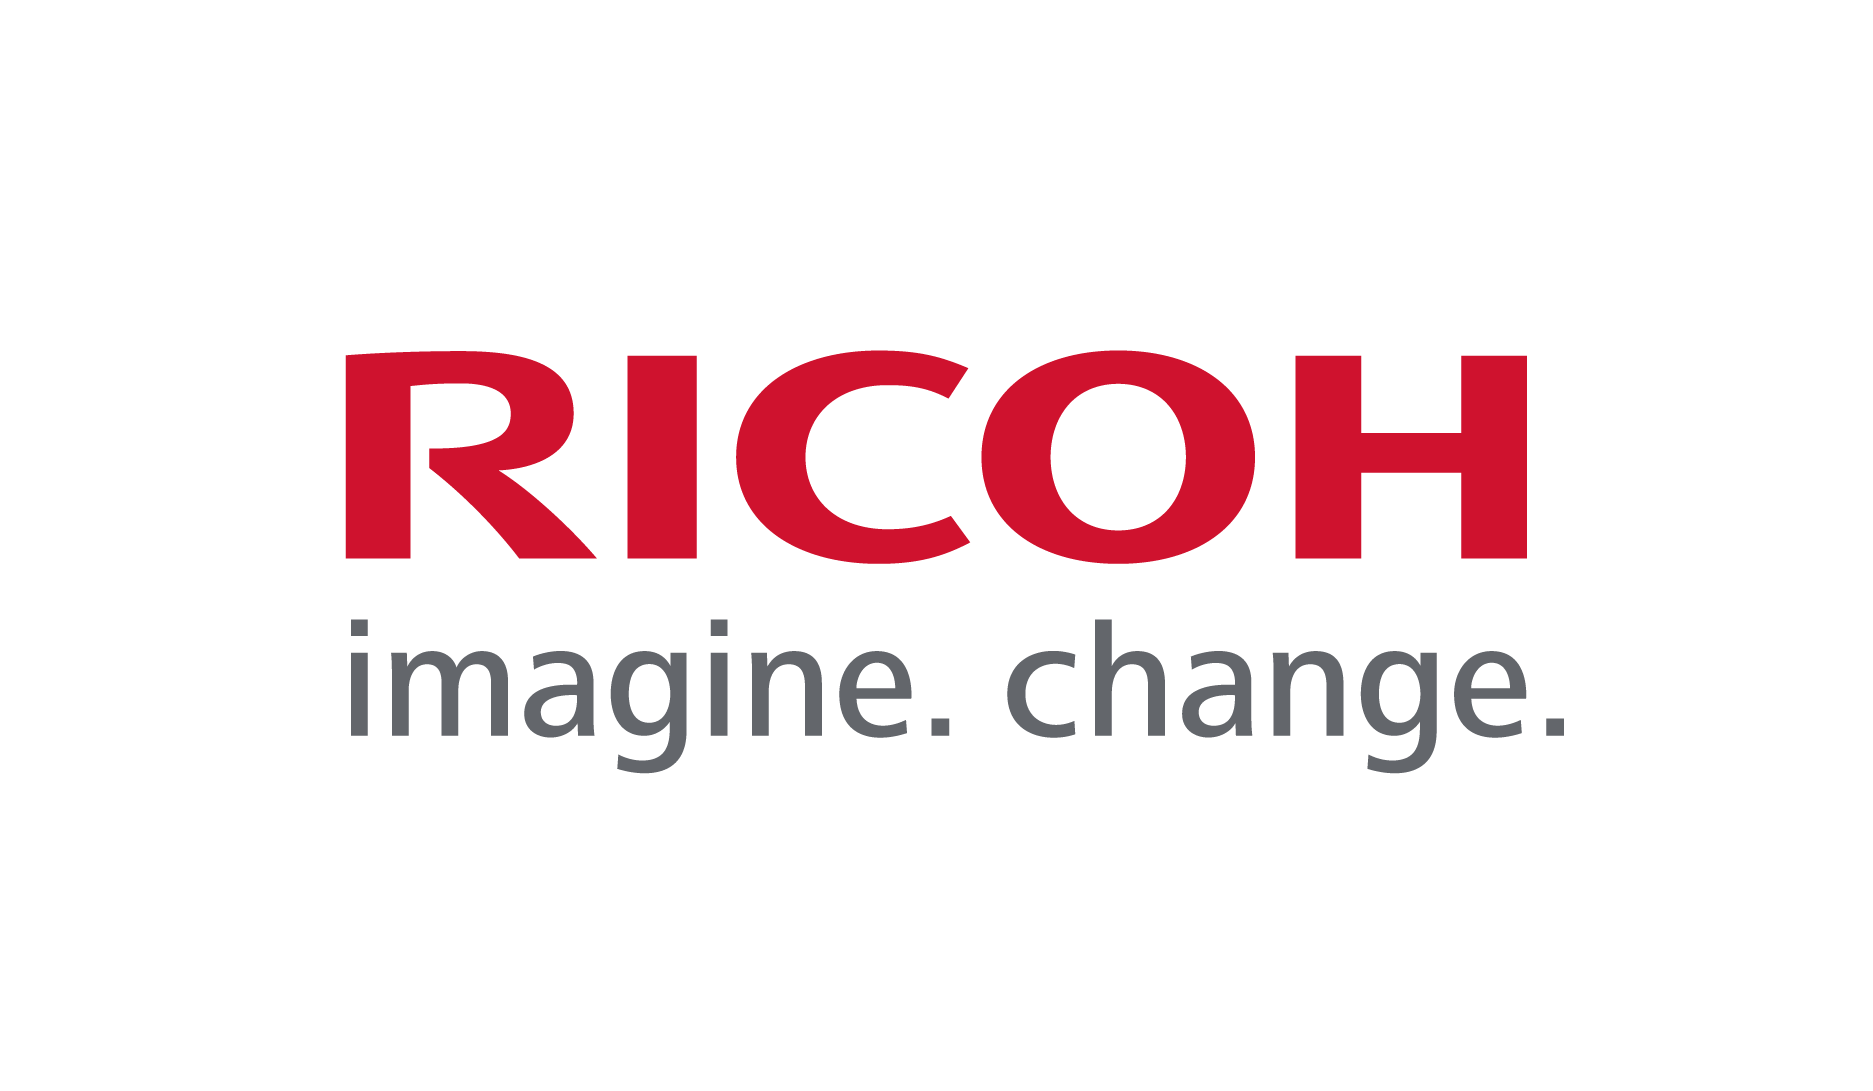 Ricoh logo. Written in red "Ricoh" written in grey underneath "imagine. change."